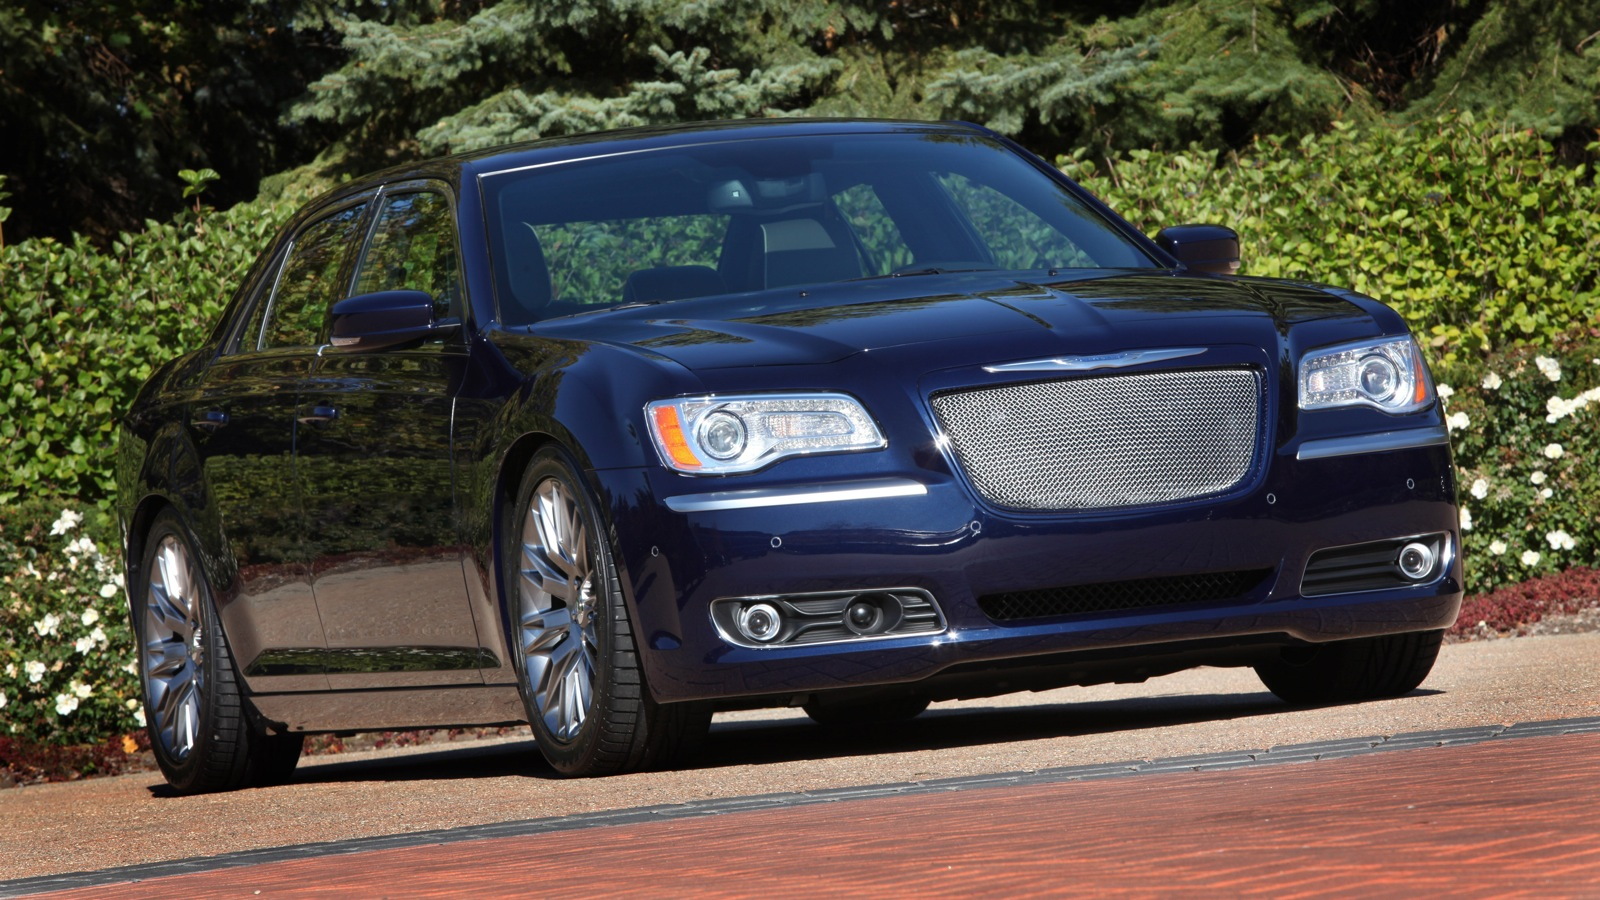 The Chrysler 300 Luxury